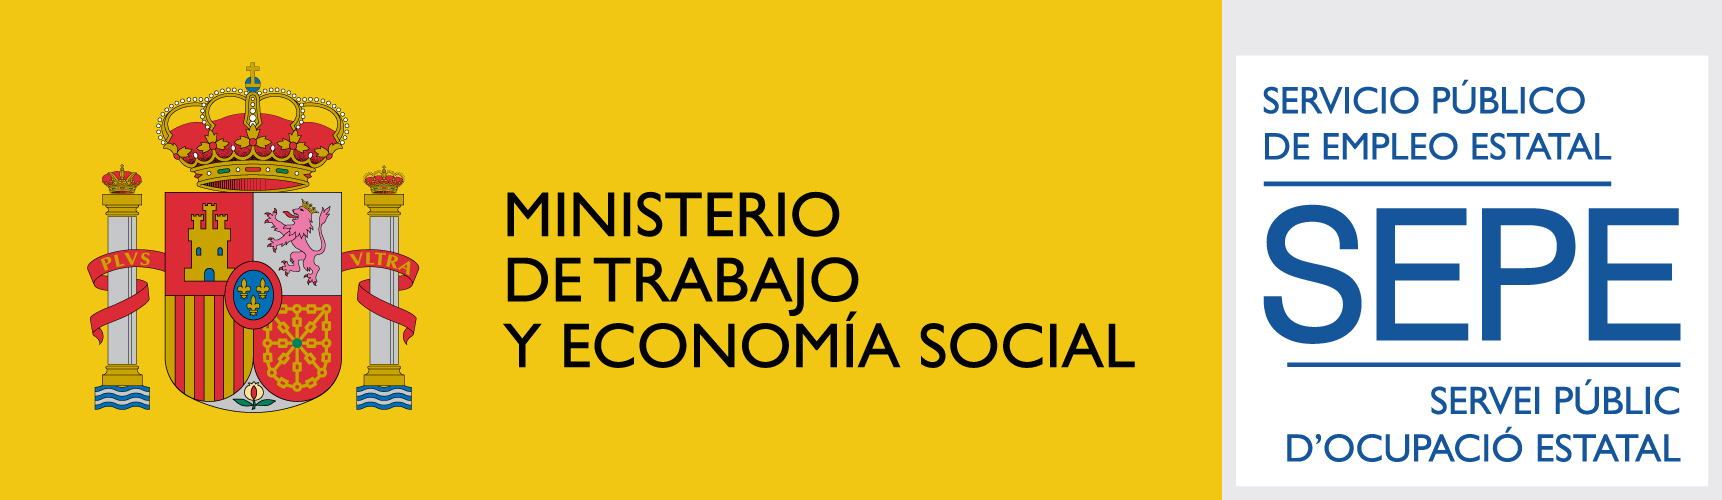 SEPE Ministerio de trabajo y economia social